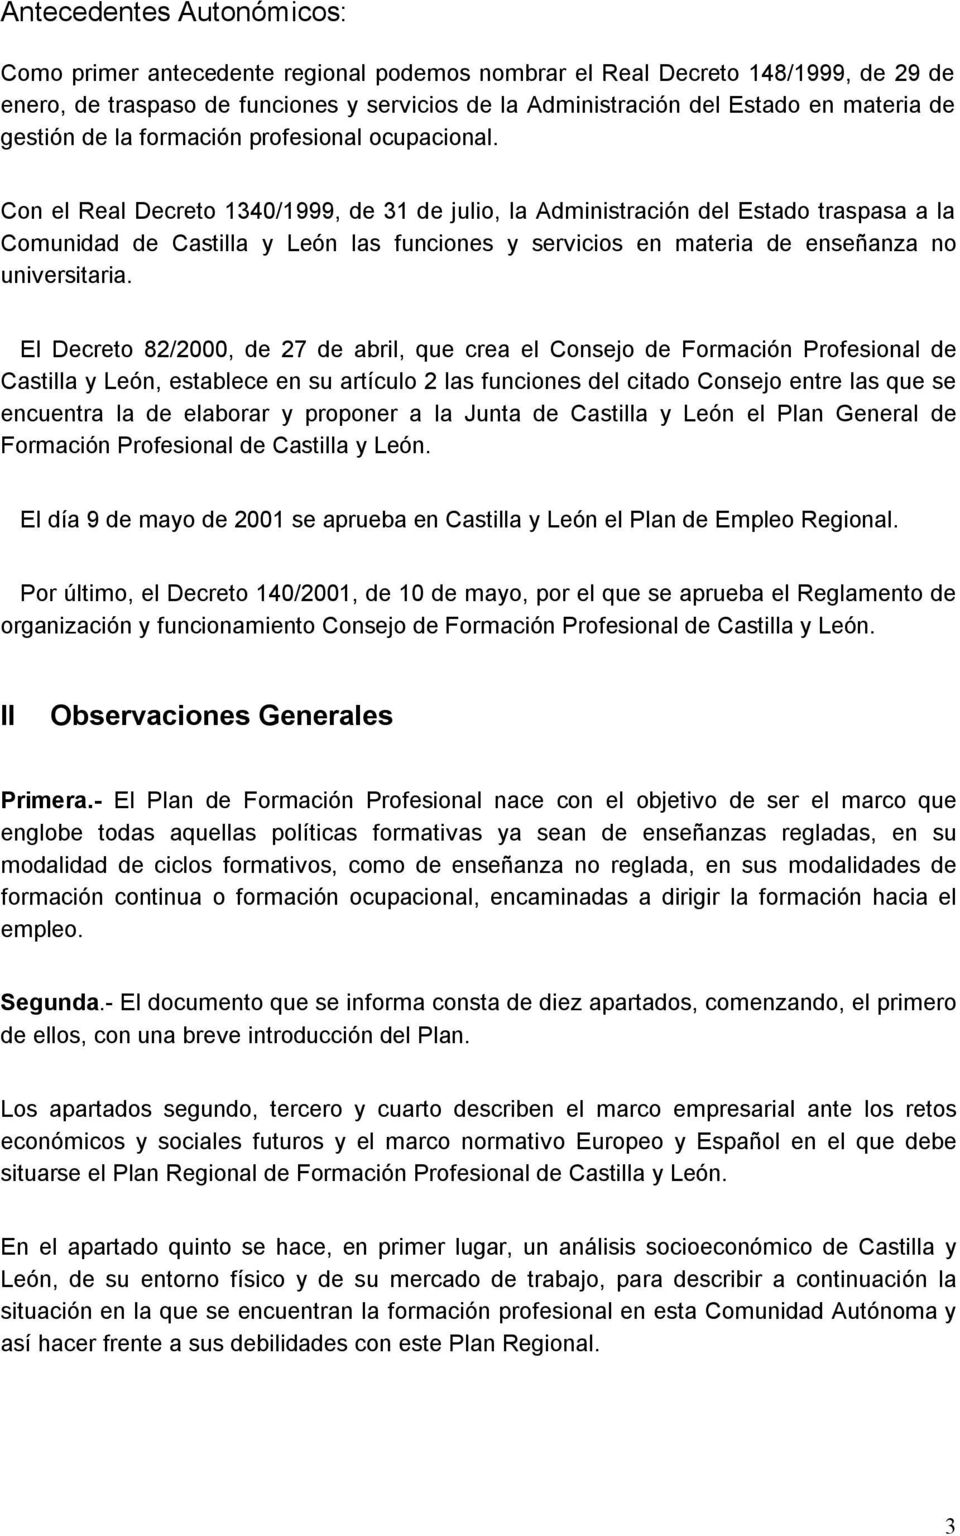 Con el Real Decreto 1340/1999, de 31 de julio, la Administración del Estado traspasa a la Comunidad de Castilla y León las funciones y servicios en materia de enseñanza no universitaria.